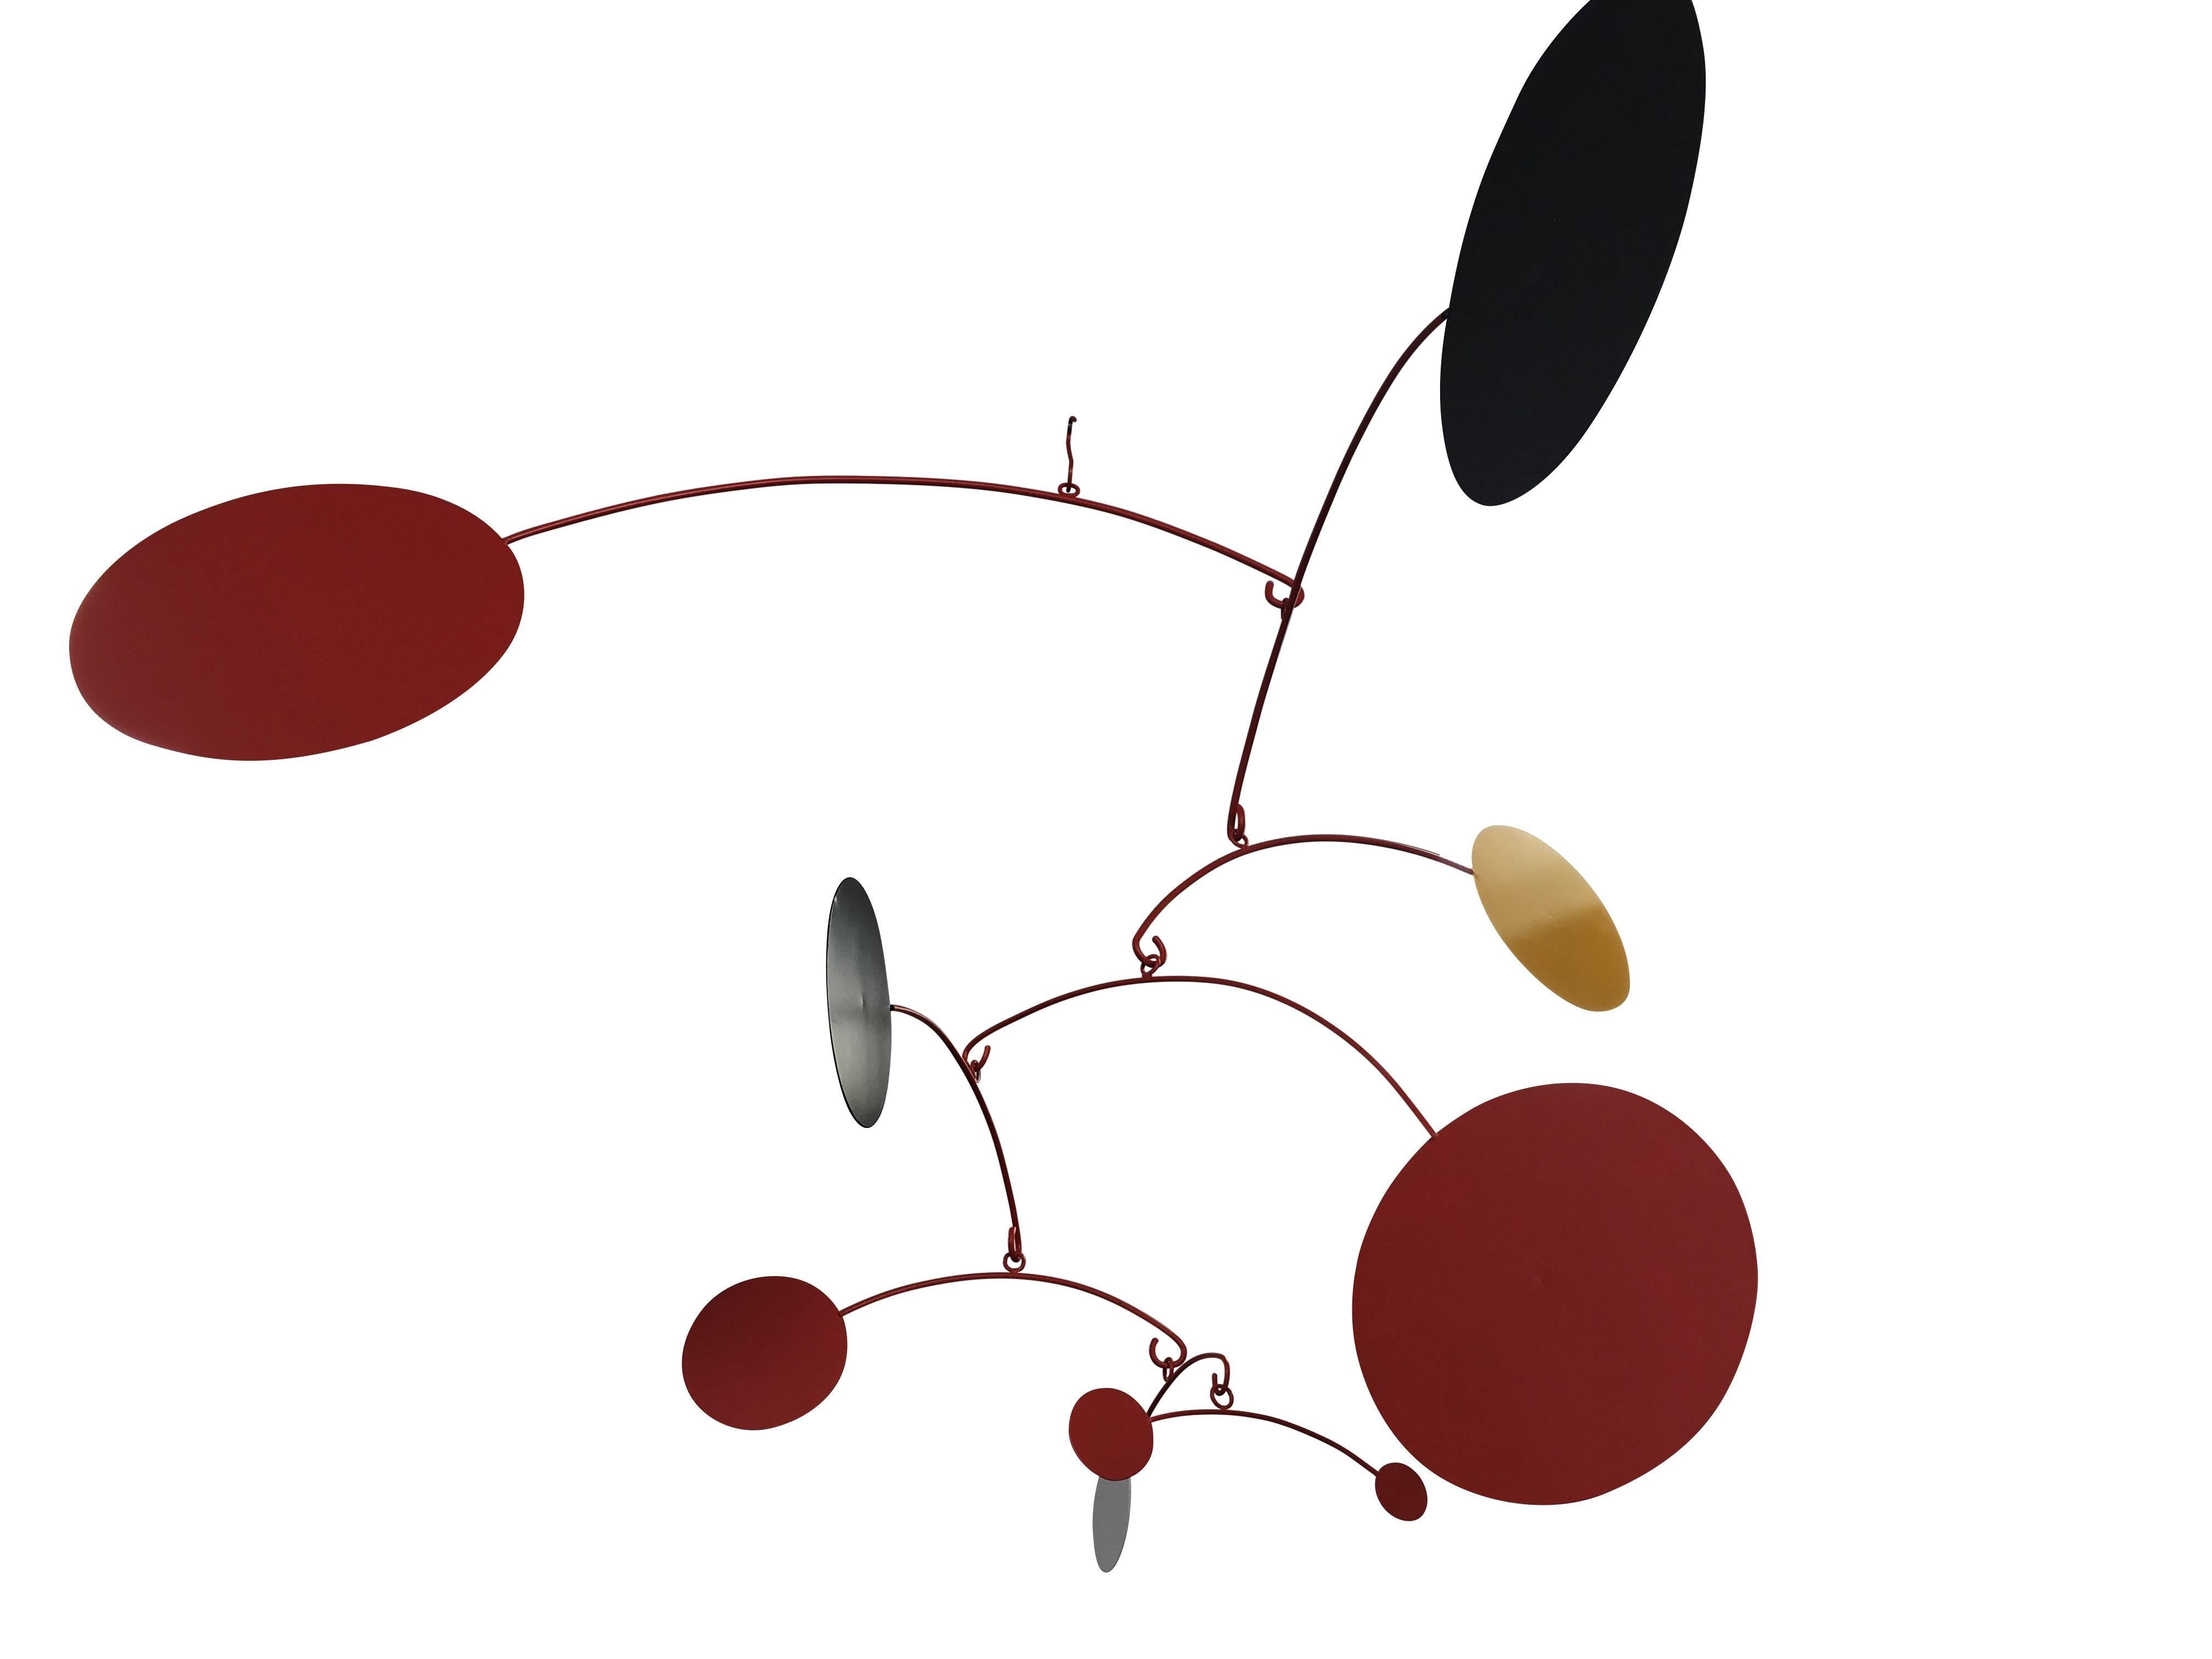 Large Kinetic Mobile in the Manner of Alexander Calder 1